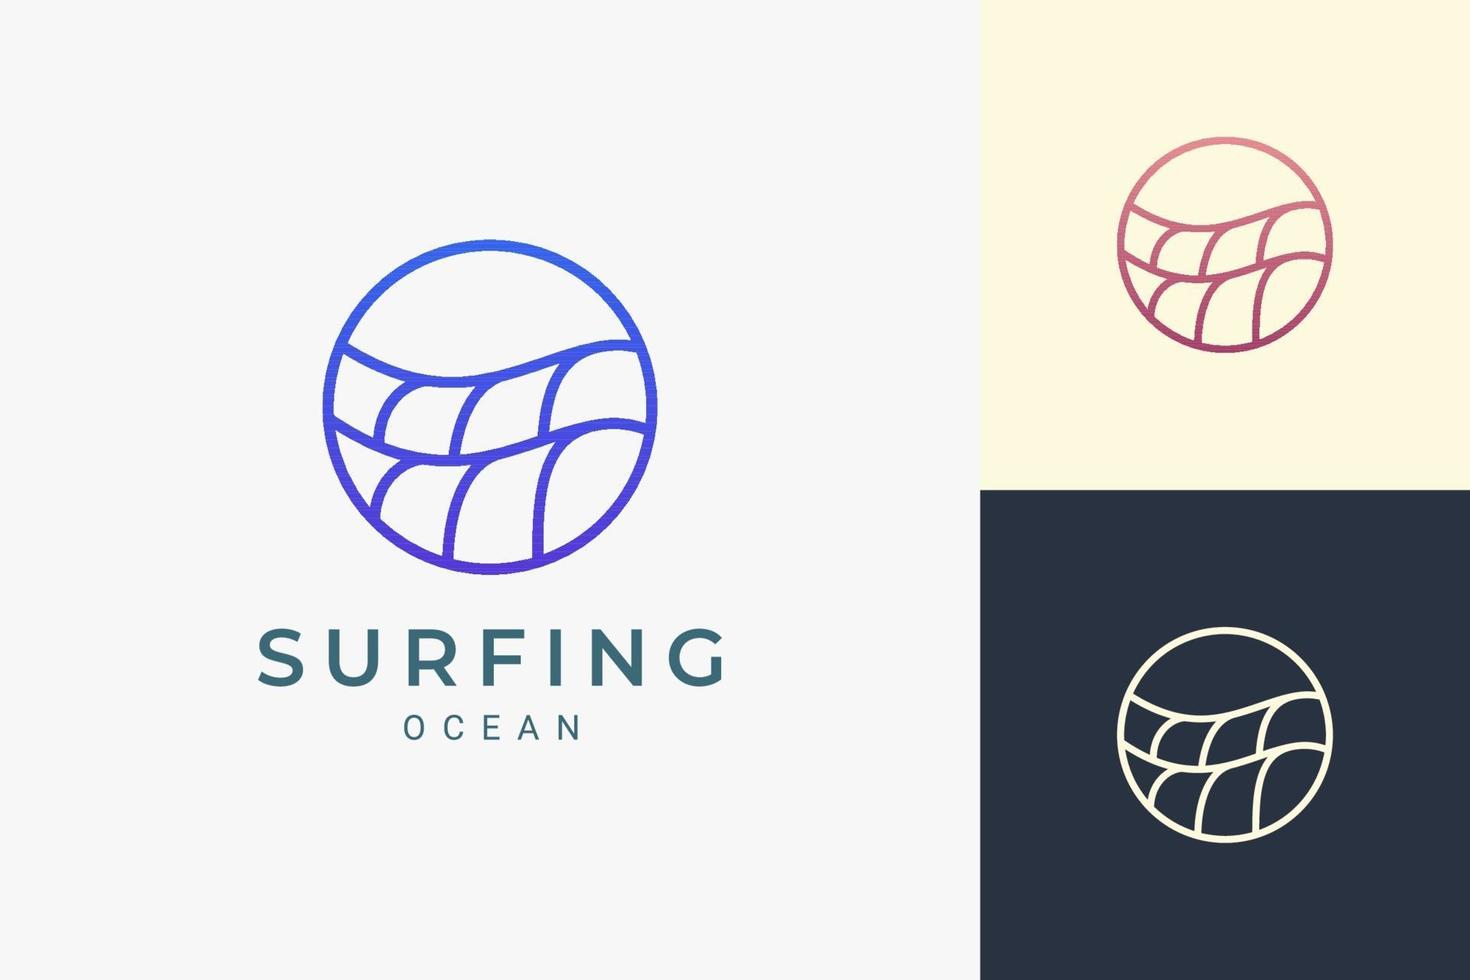 Logotipo de tema marino o acuático en forma de círculo de onda oceánica simple vector